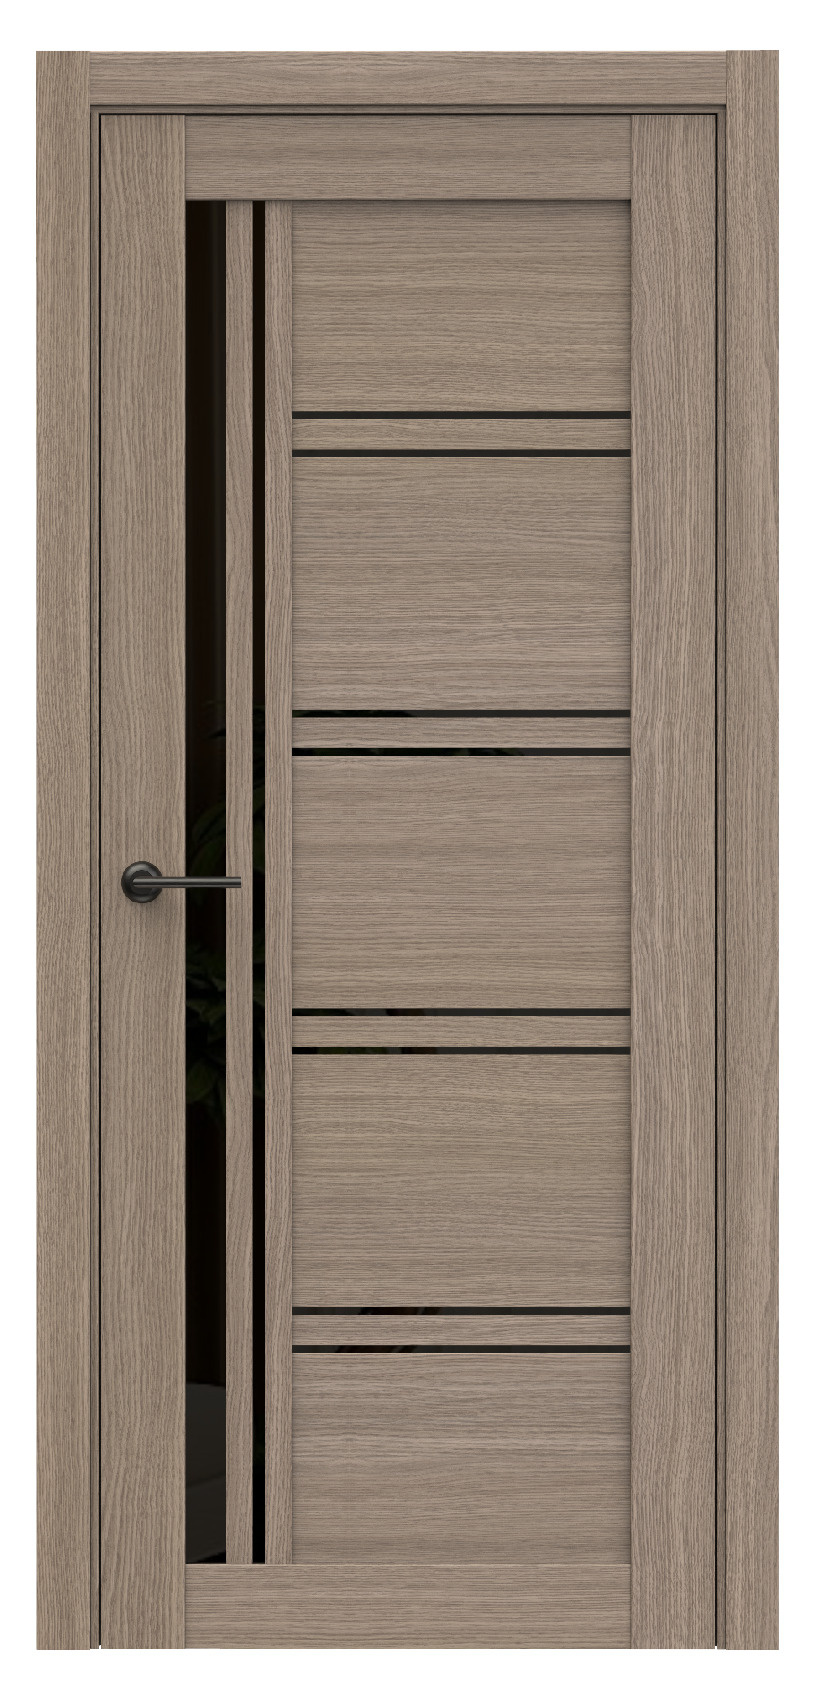 Questdoors Межкомнатная дверь Q68, арт. 17490 - фото №1